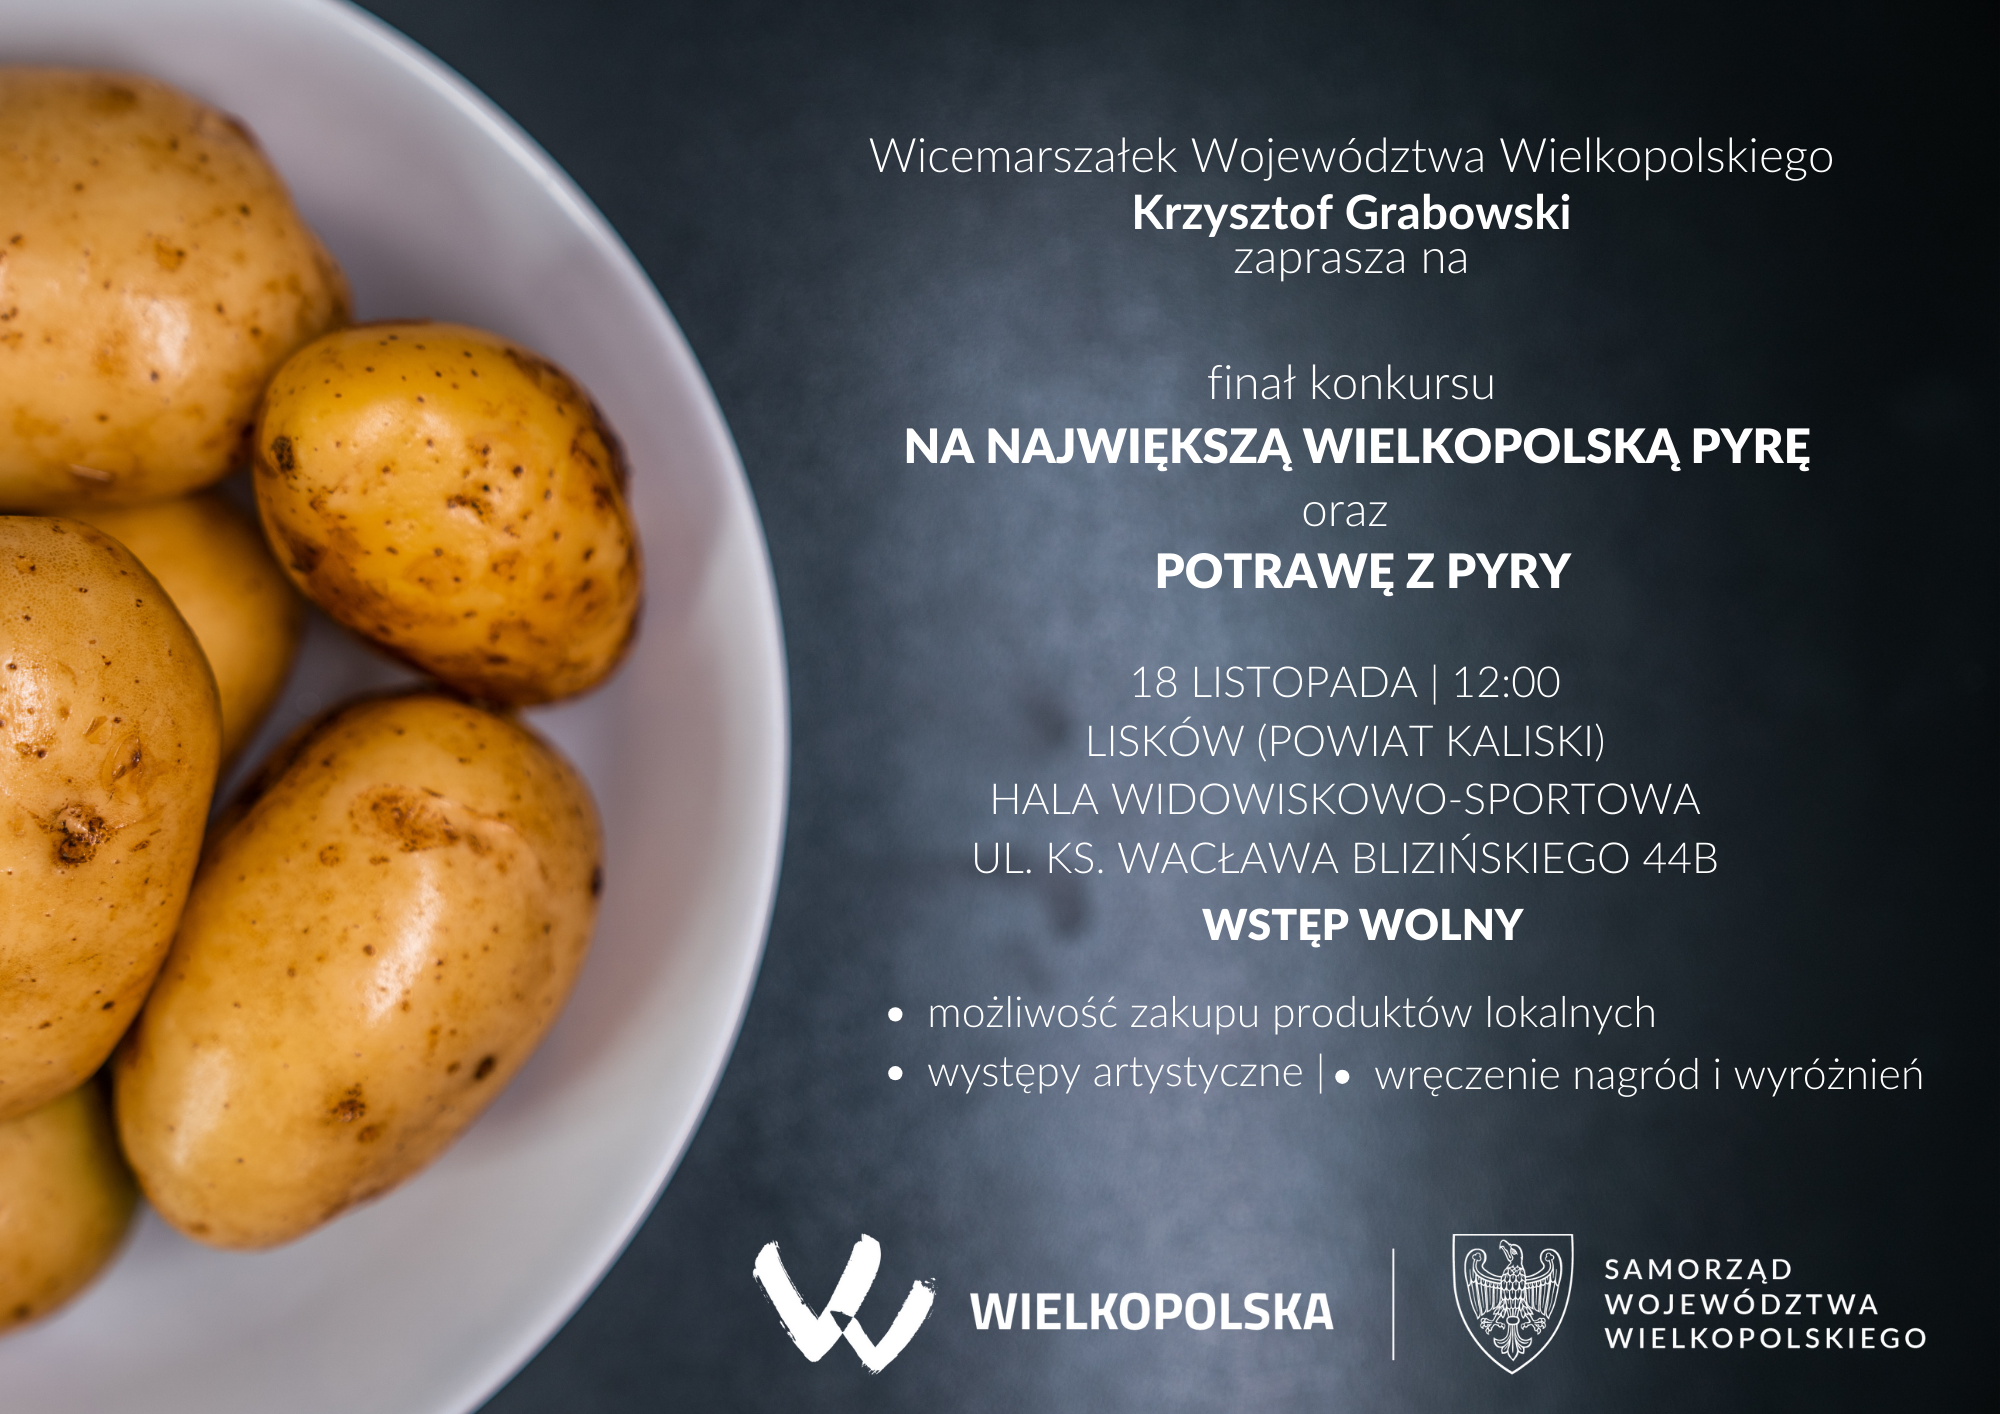 Samorząd Województwa Wielkopolskiego organizuje konkurs na największą wielkopolską pyrę oraz potrawę z pyry. 